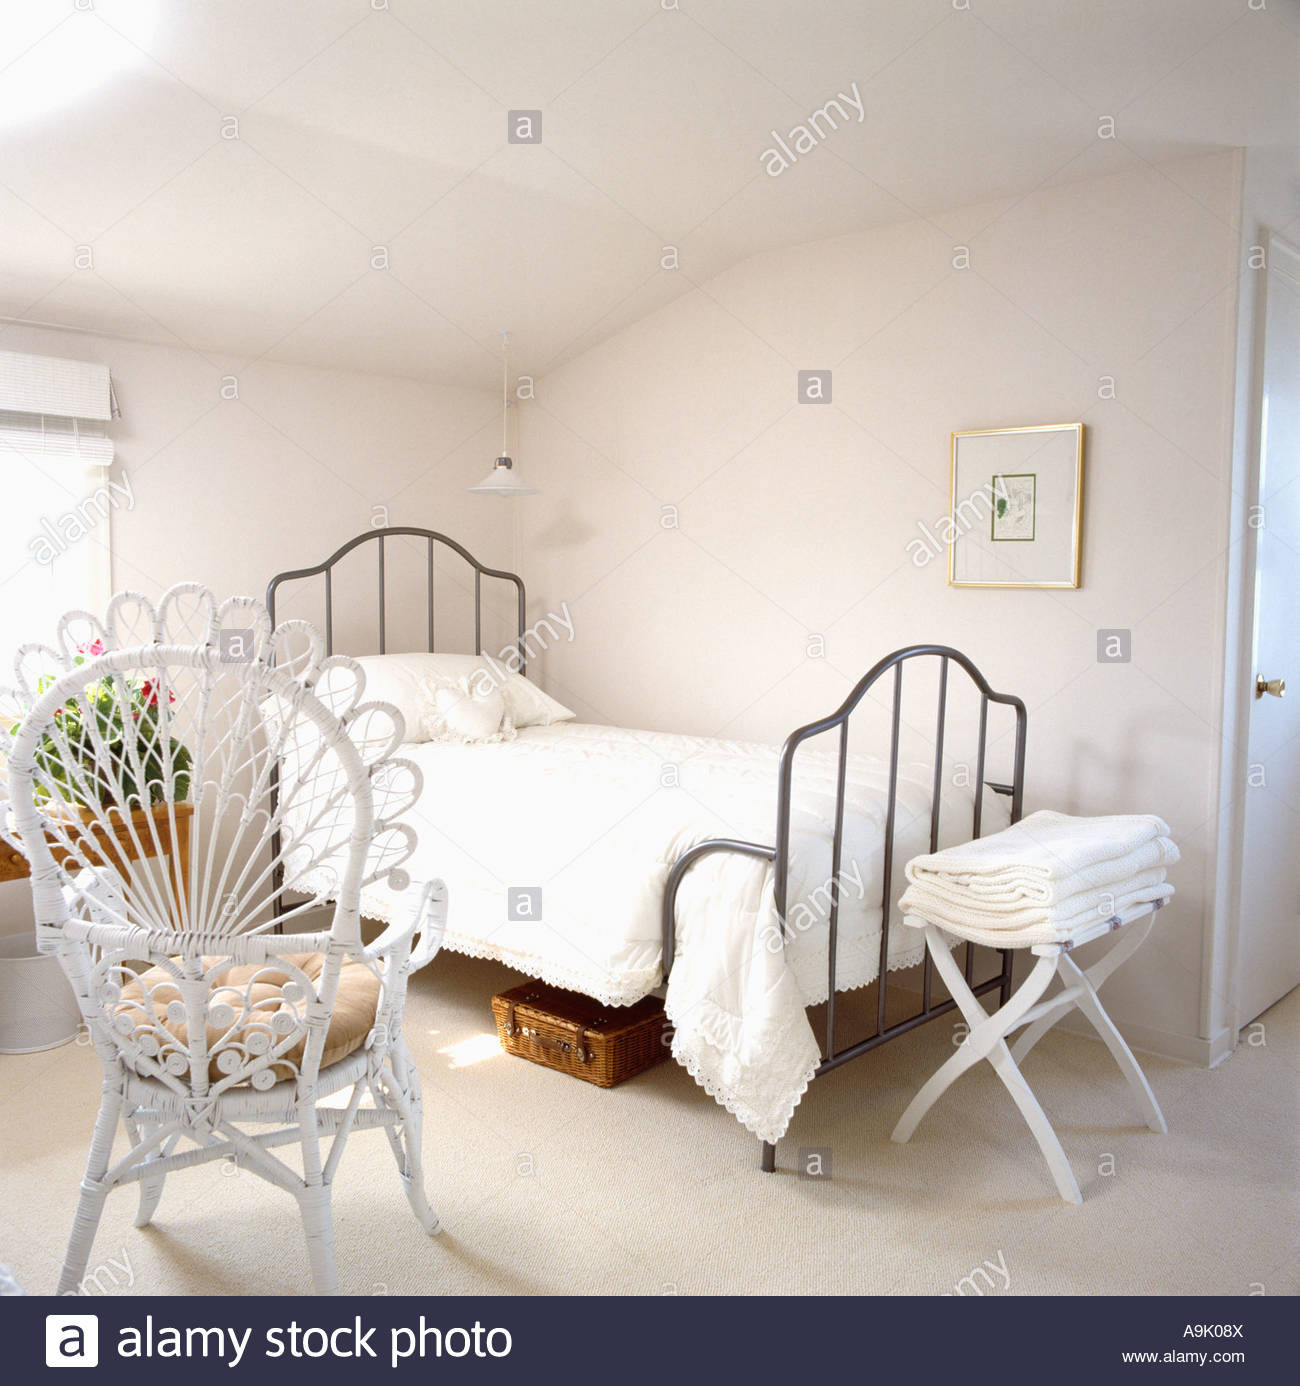 Schlafzimmer Stuhl
 Weißer Pfau Stuhl in einfache weiße Schlafzimmer mit